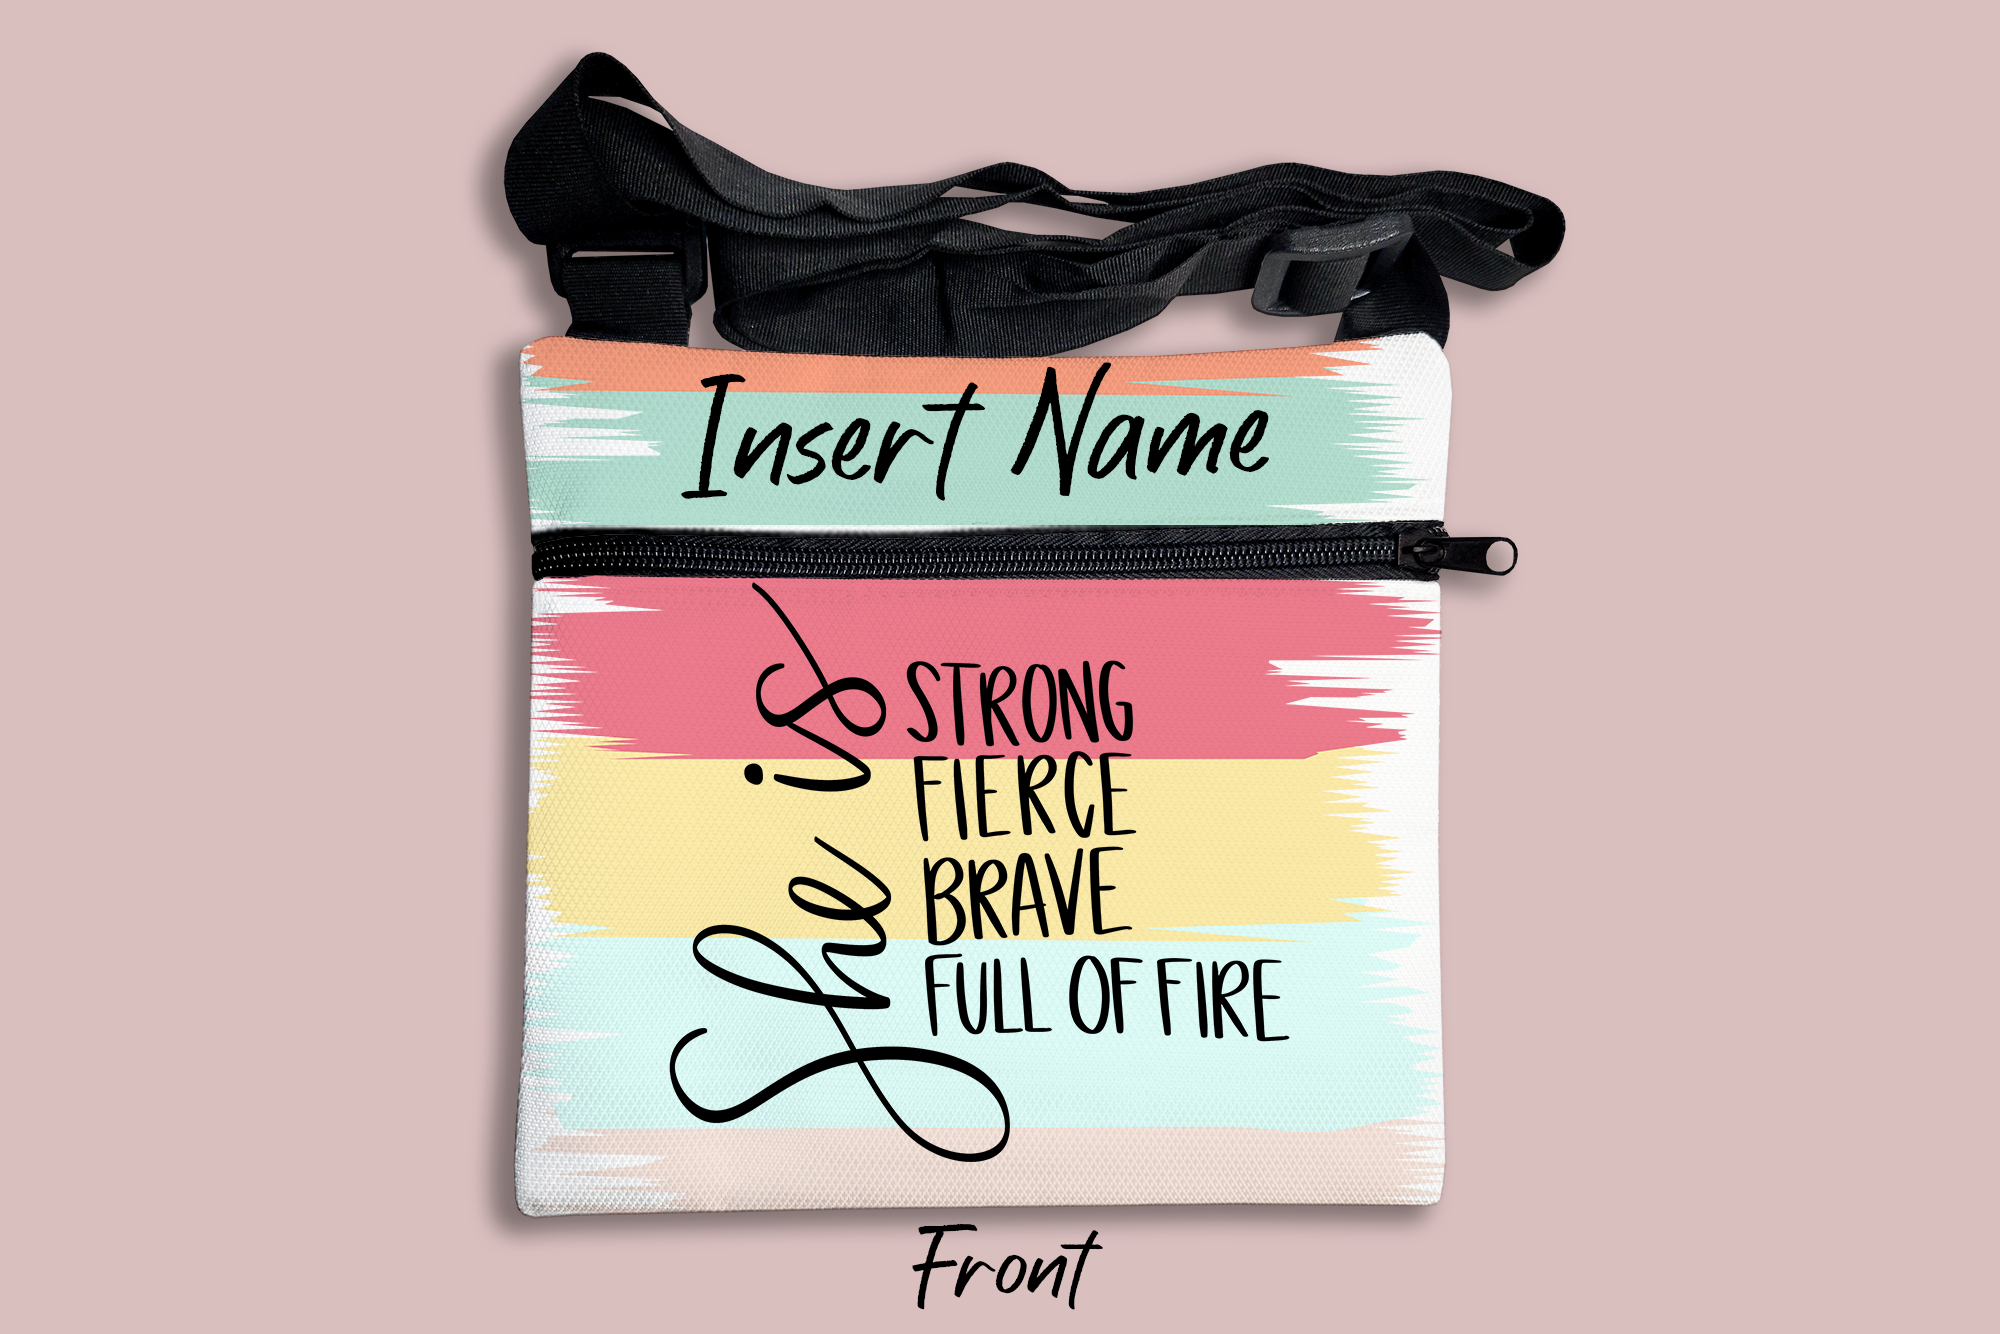 She is Strong Fierce Brave Full of Fire Brush Strokes Cross Body Bag + FREE Bookmark